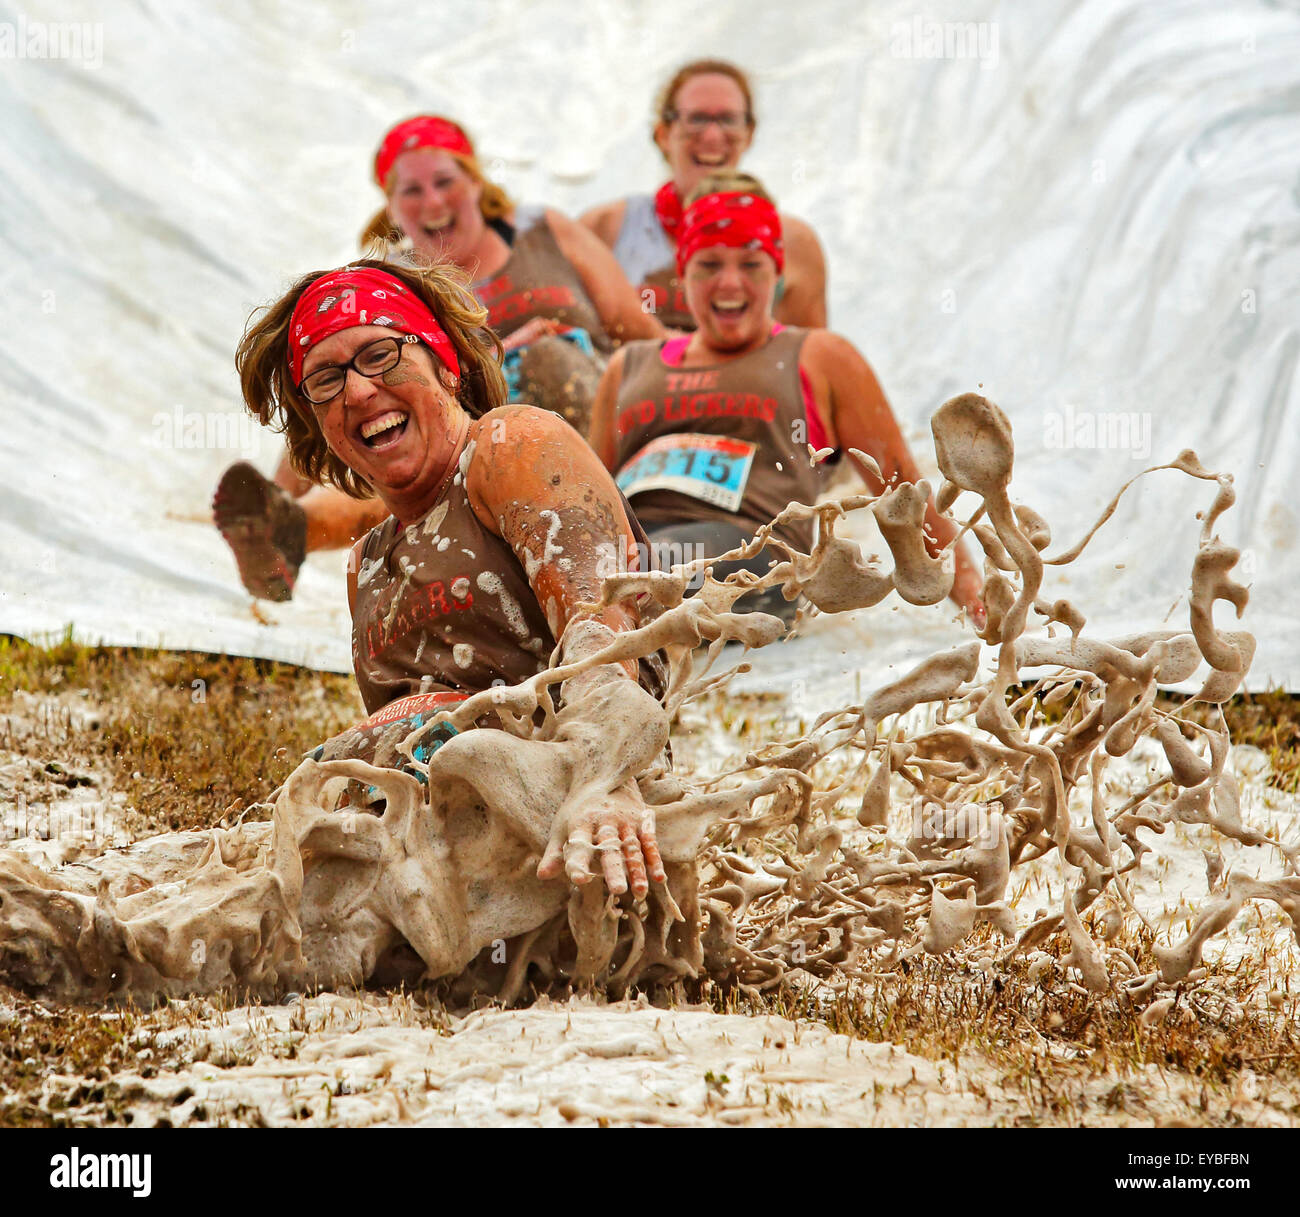 Shelley DiLiberatore e il fango Lickers scorrere il loro modo per un sacco di risate al fango eseguire per cuore Luglio 25, 2015, Waterford. Foto Stock